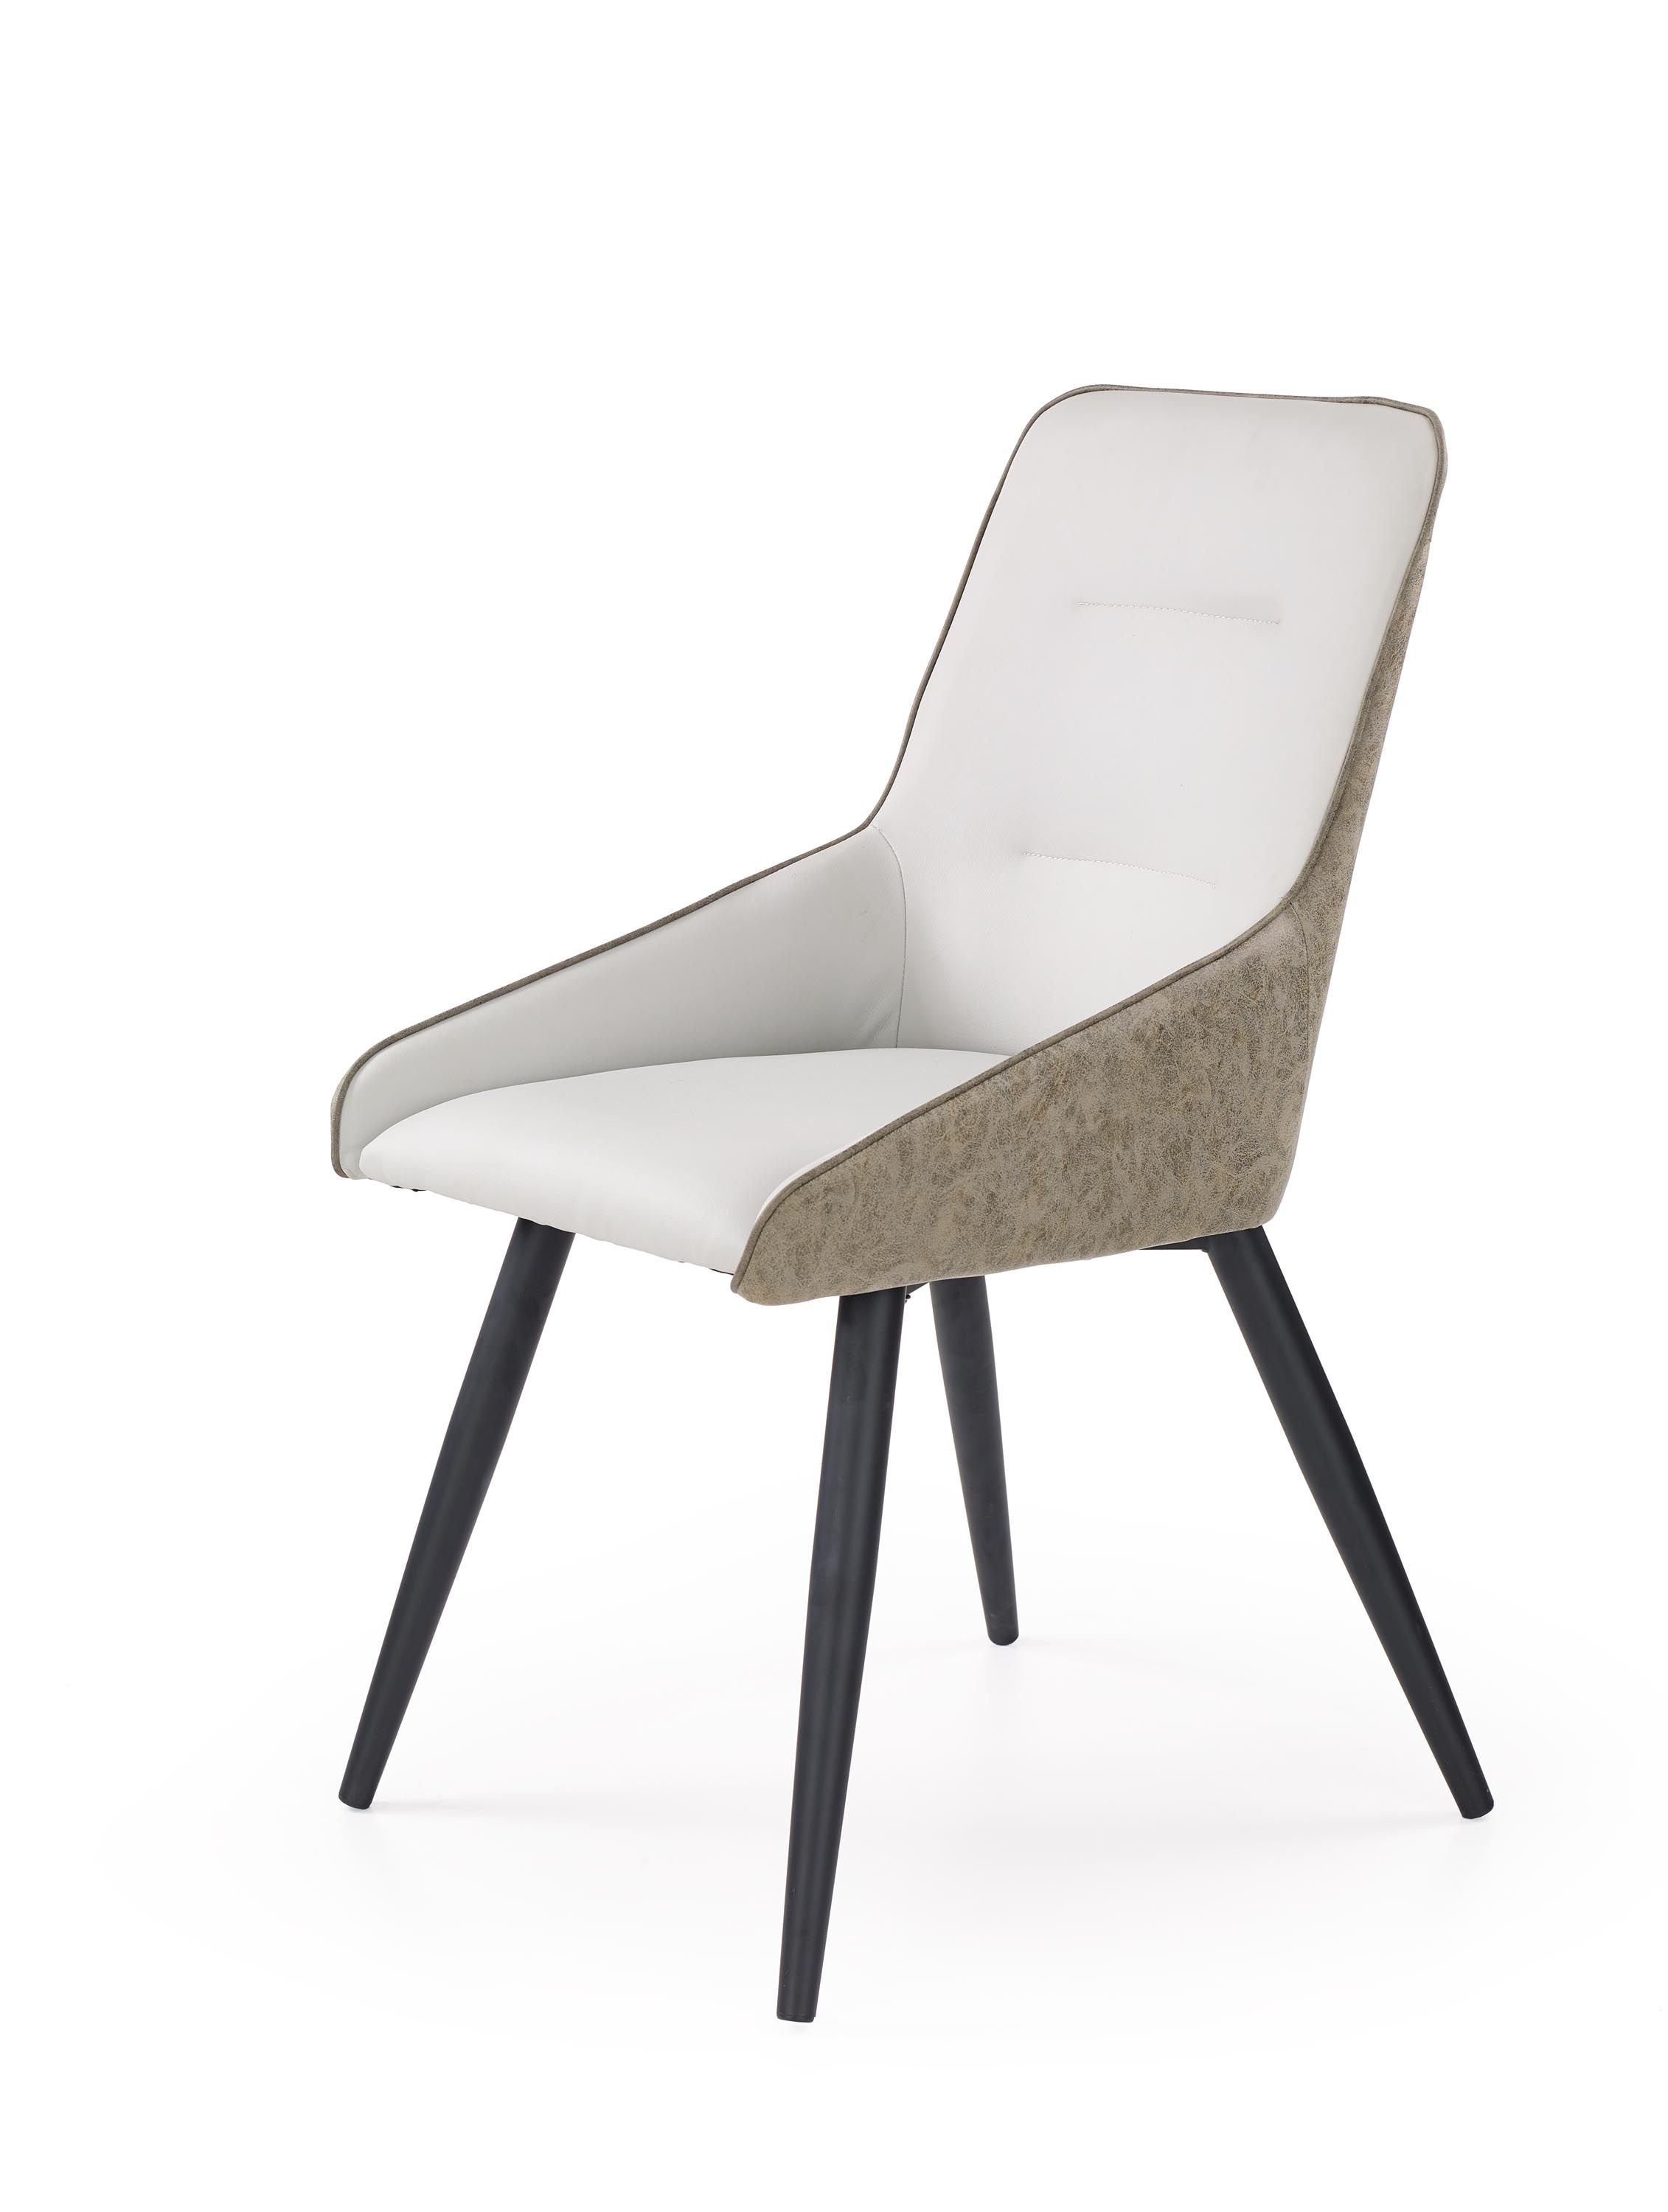 K243 židle jasny beton / popel (1p=2szt) Halmar  - Nabytek-Bogart.cz